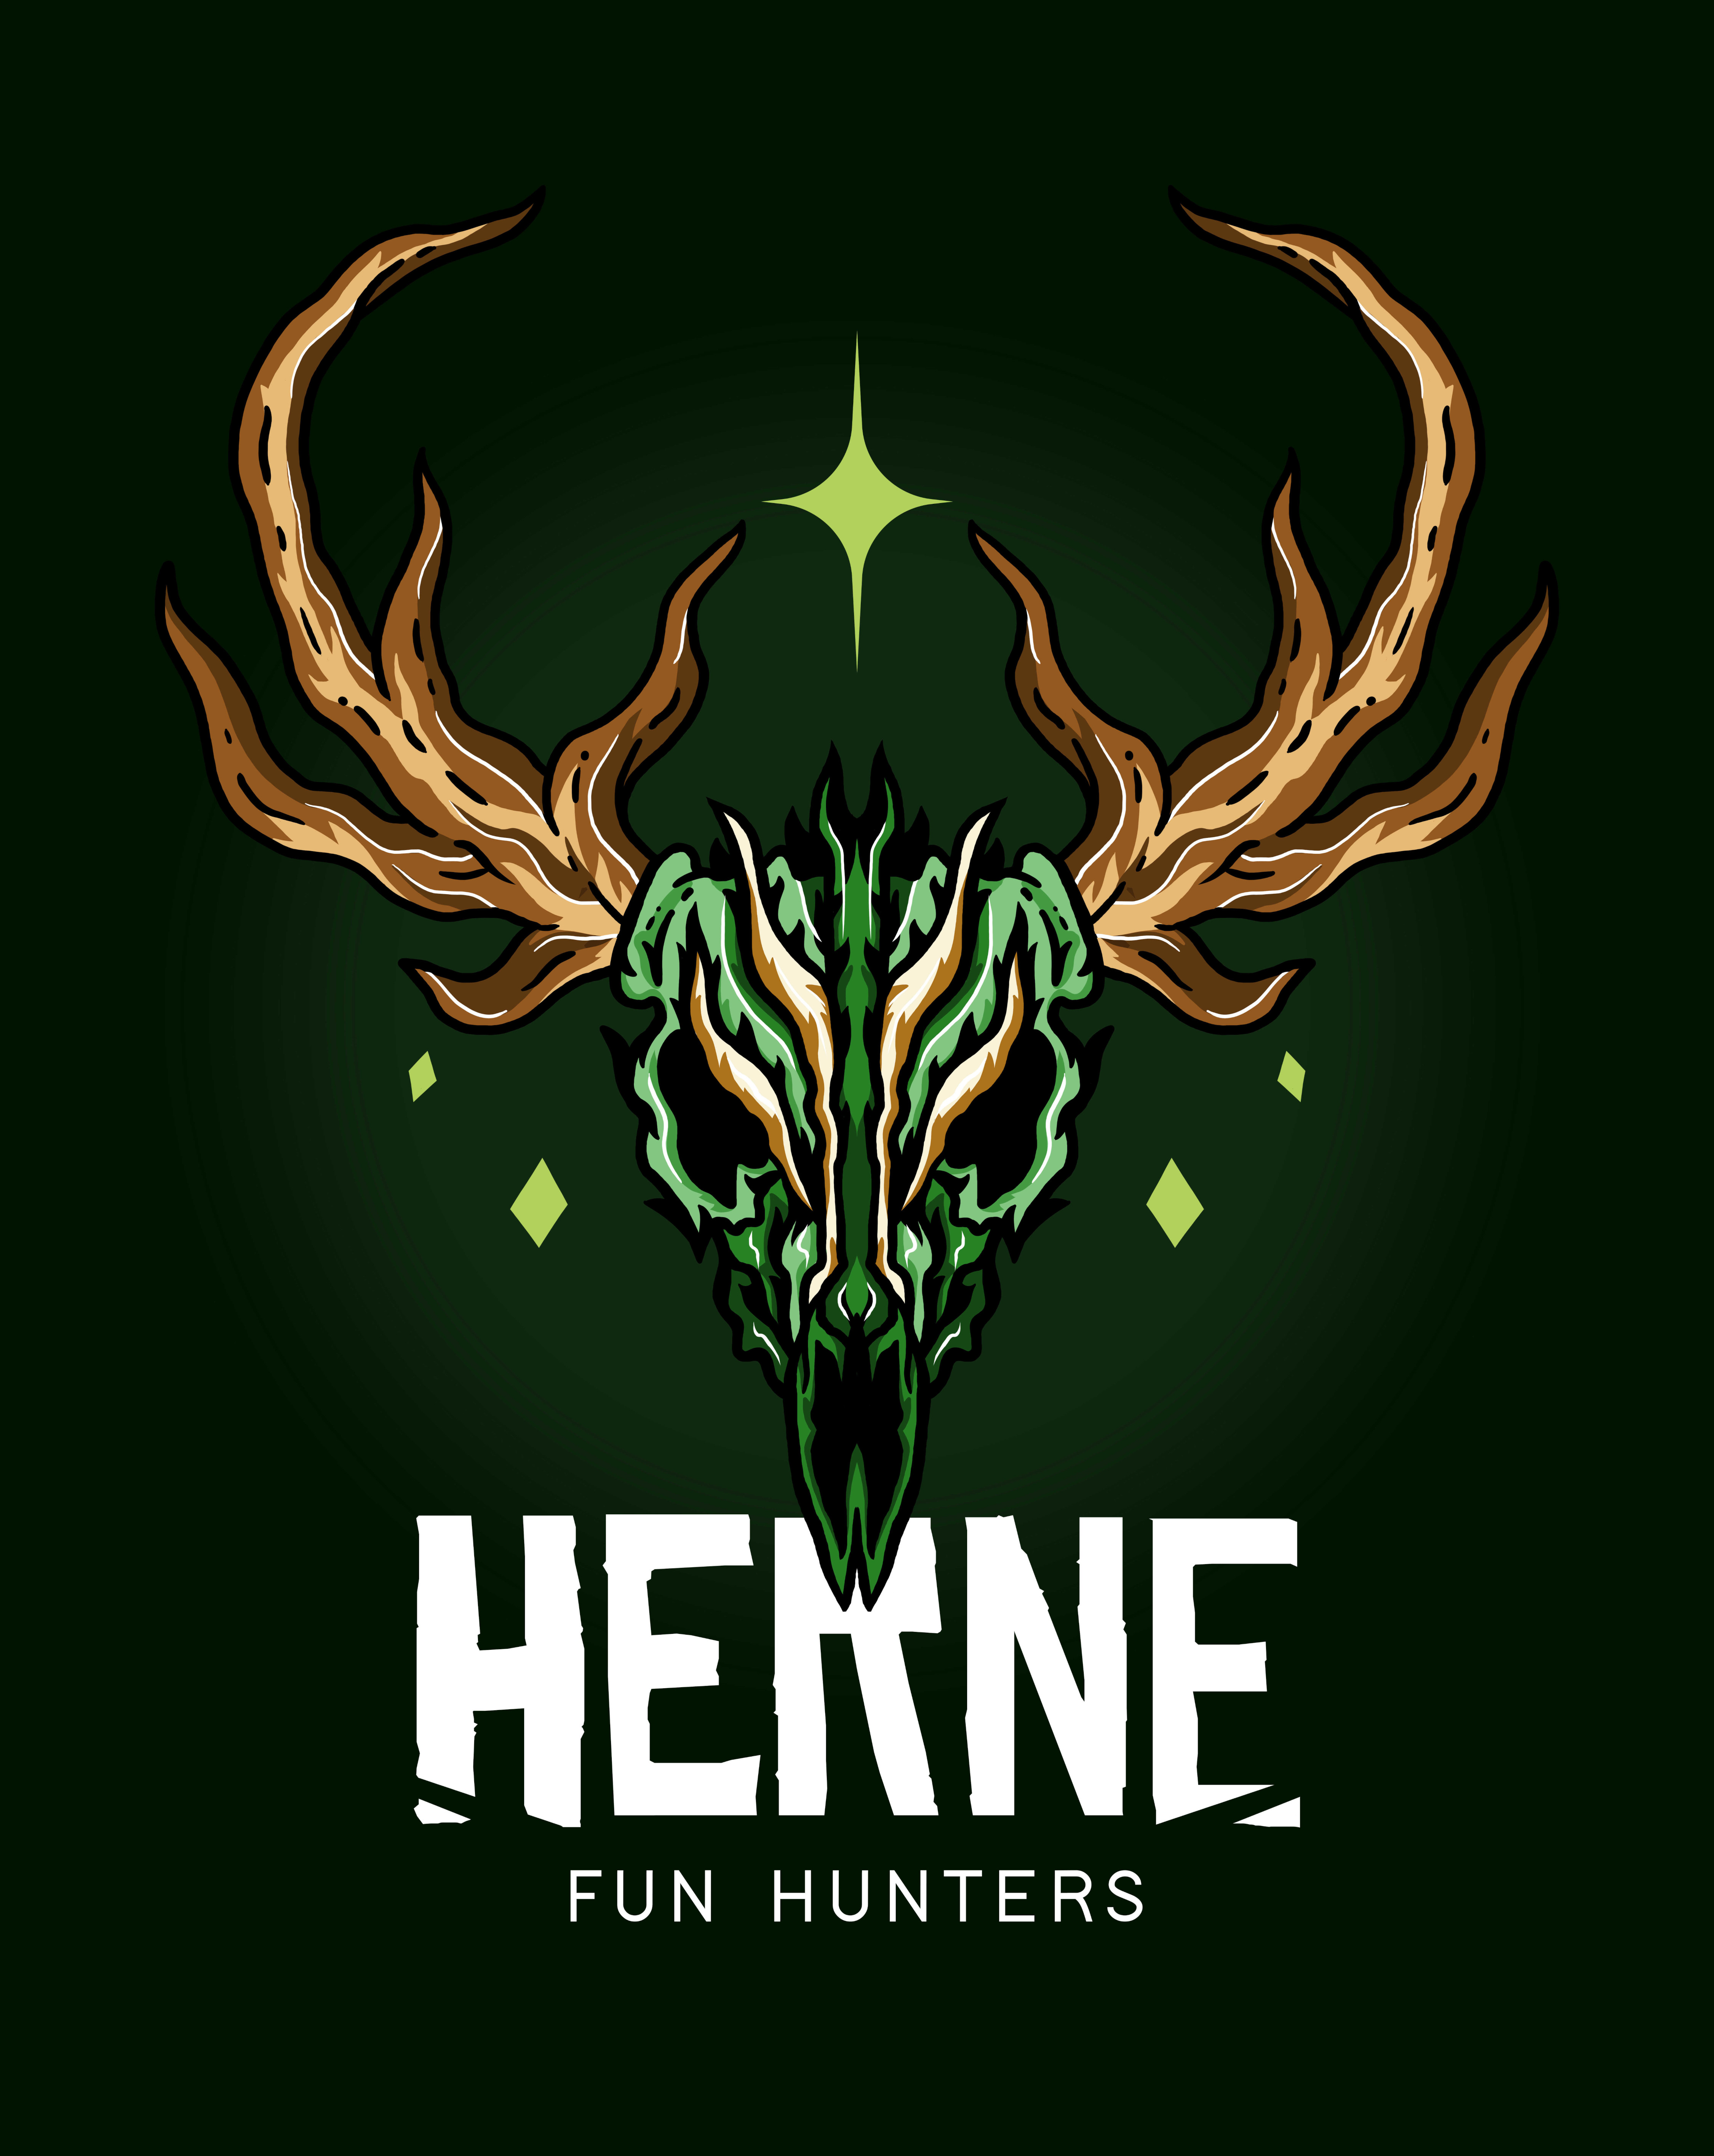 HERNE Fun Hunters